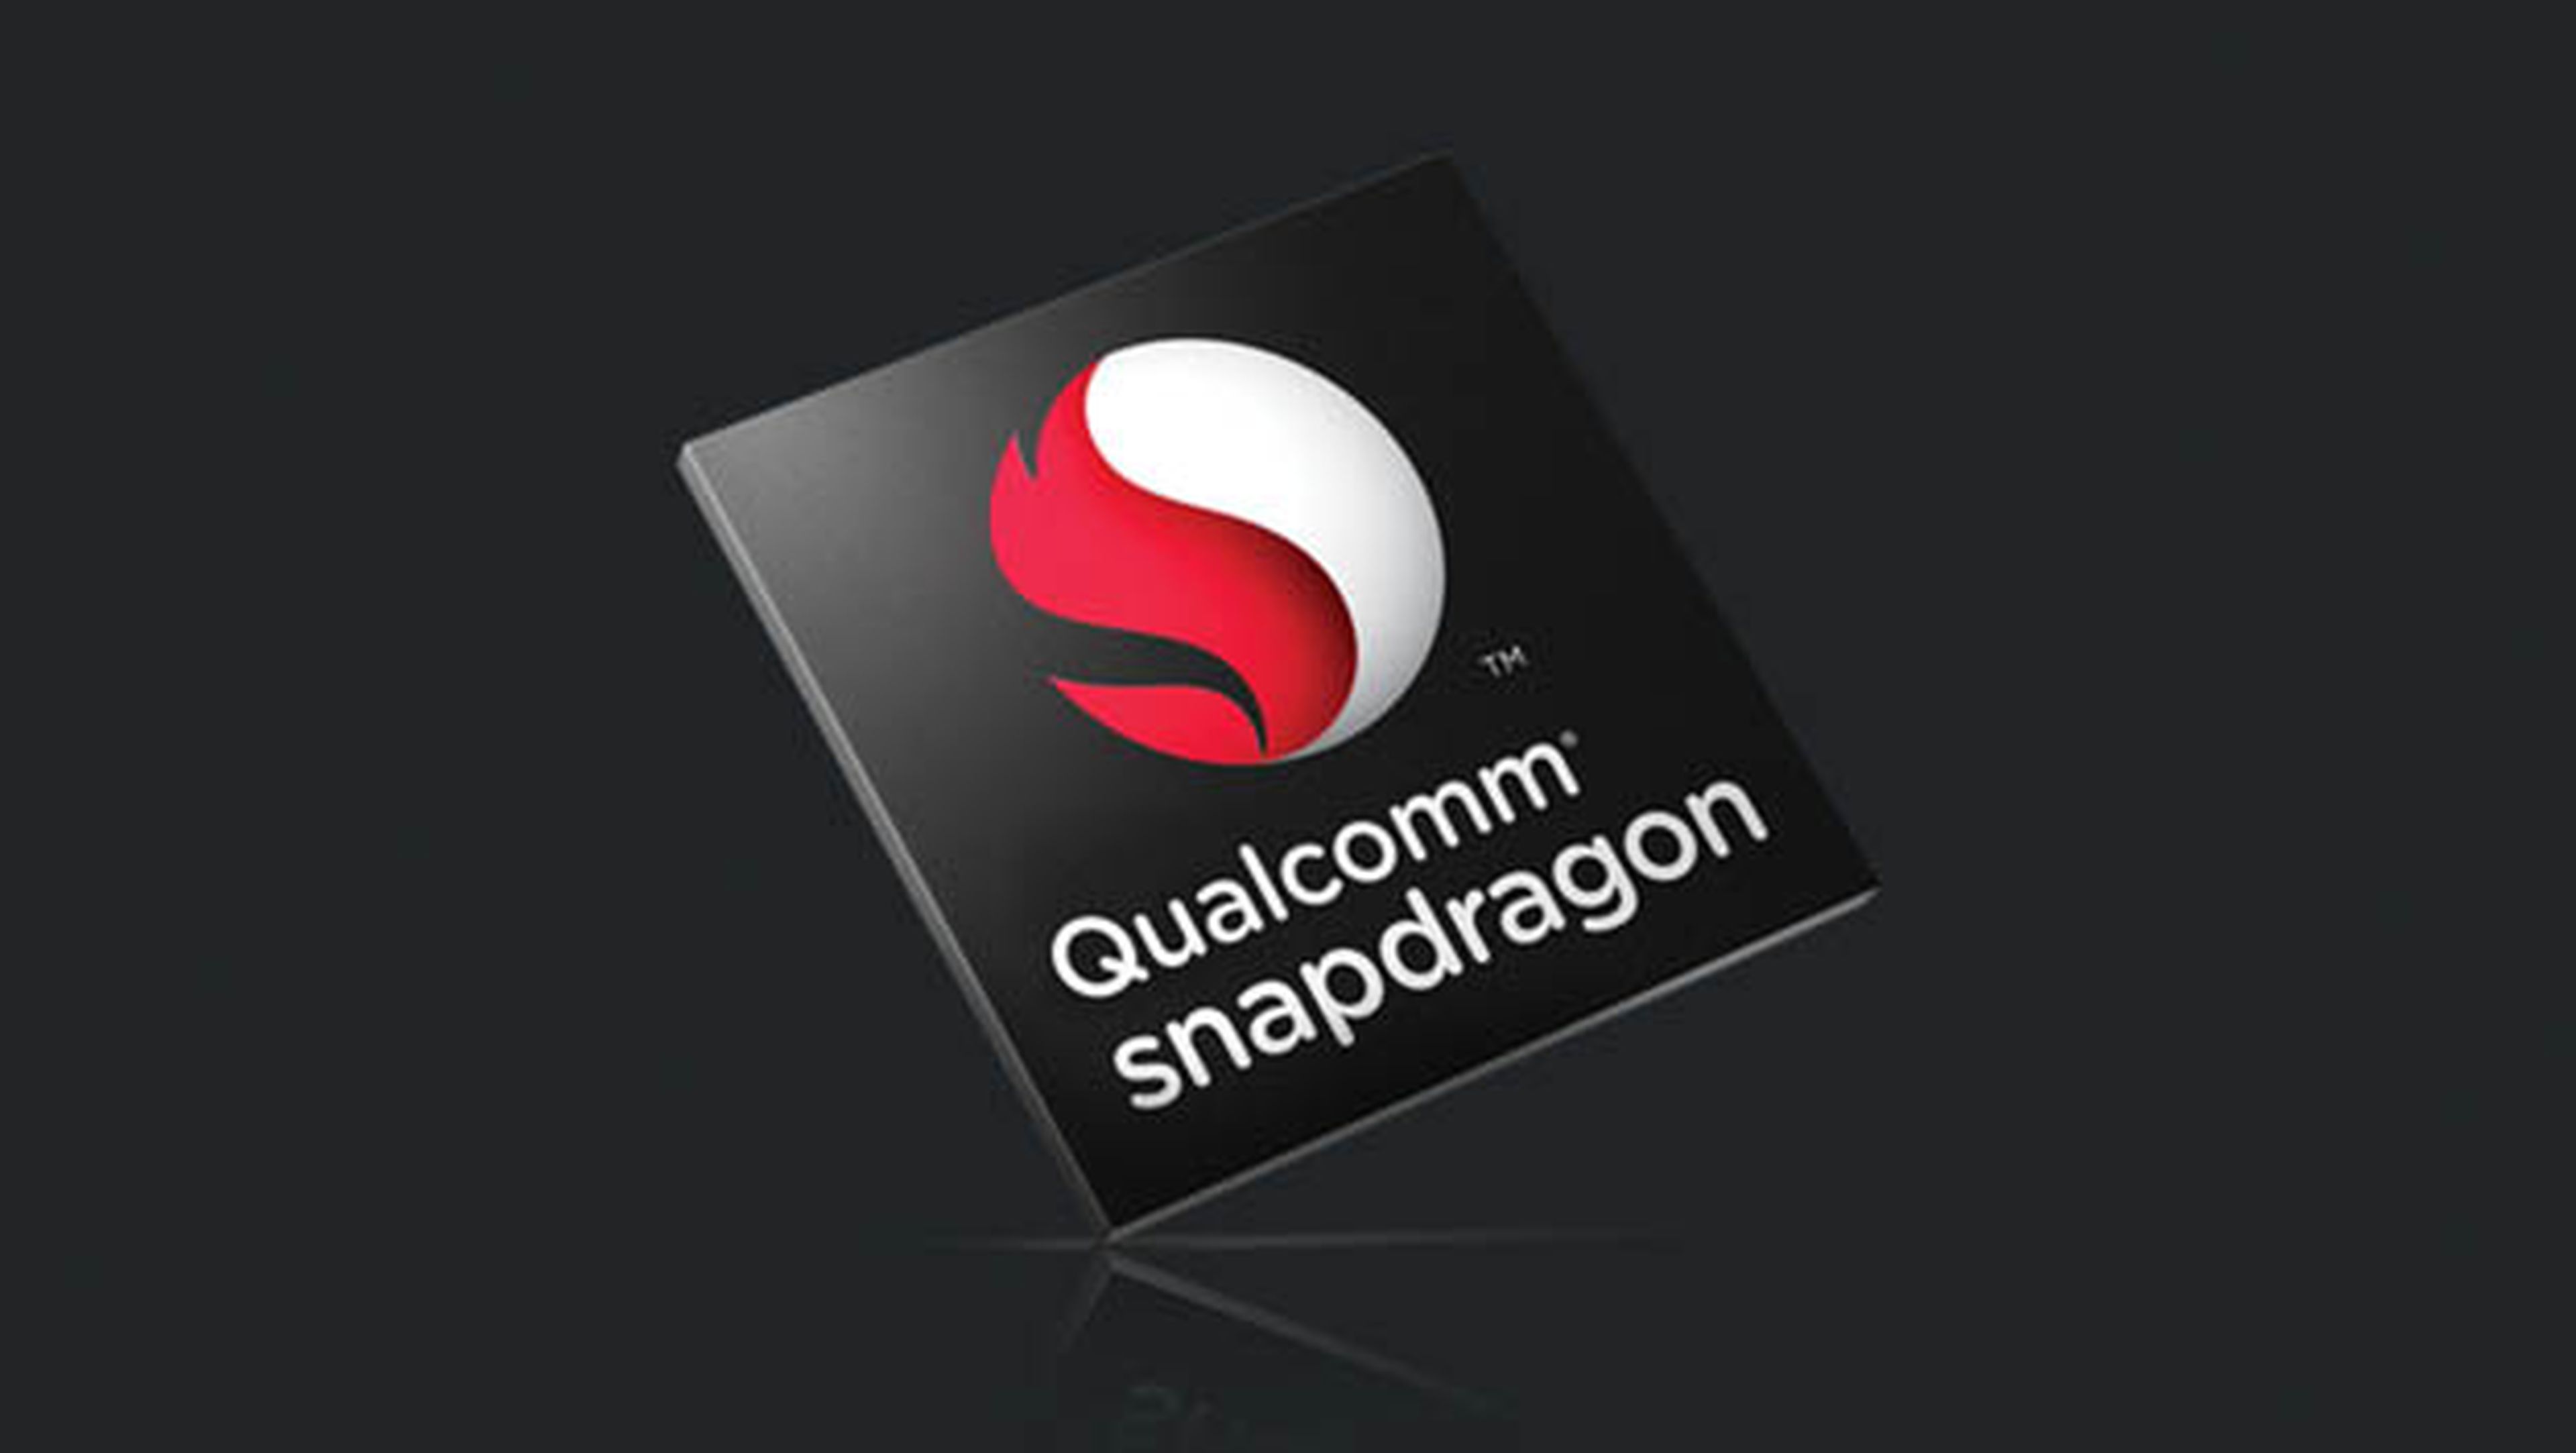 Qualcomm Snapdragon 820 presentado oficialmente